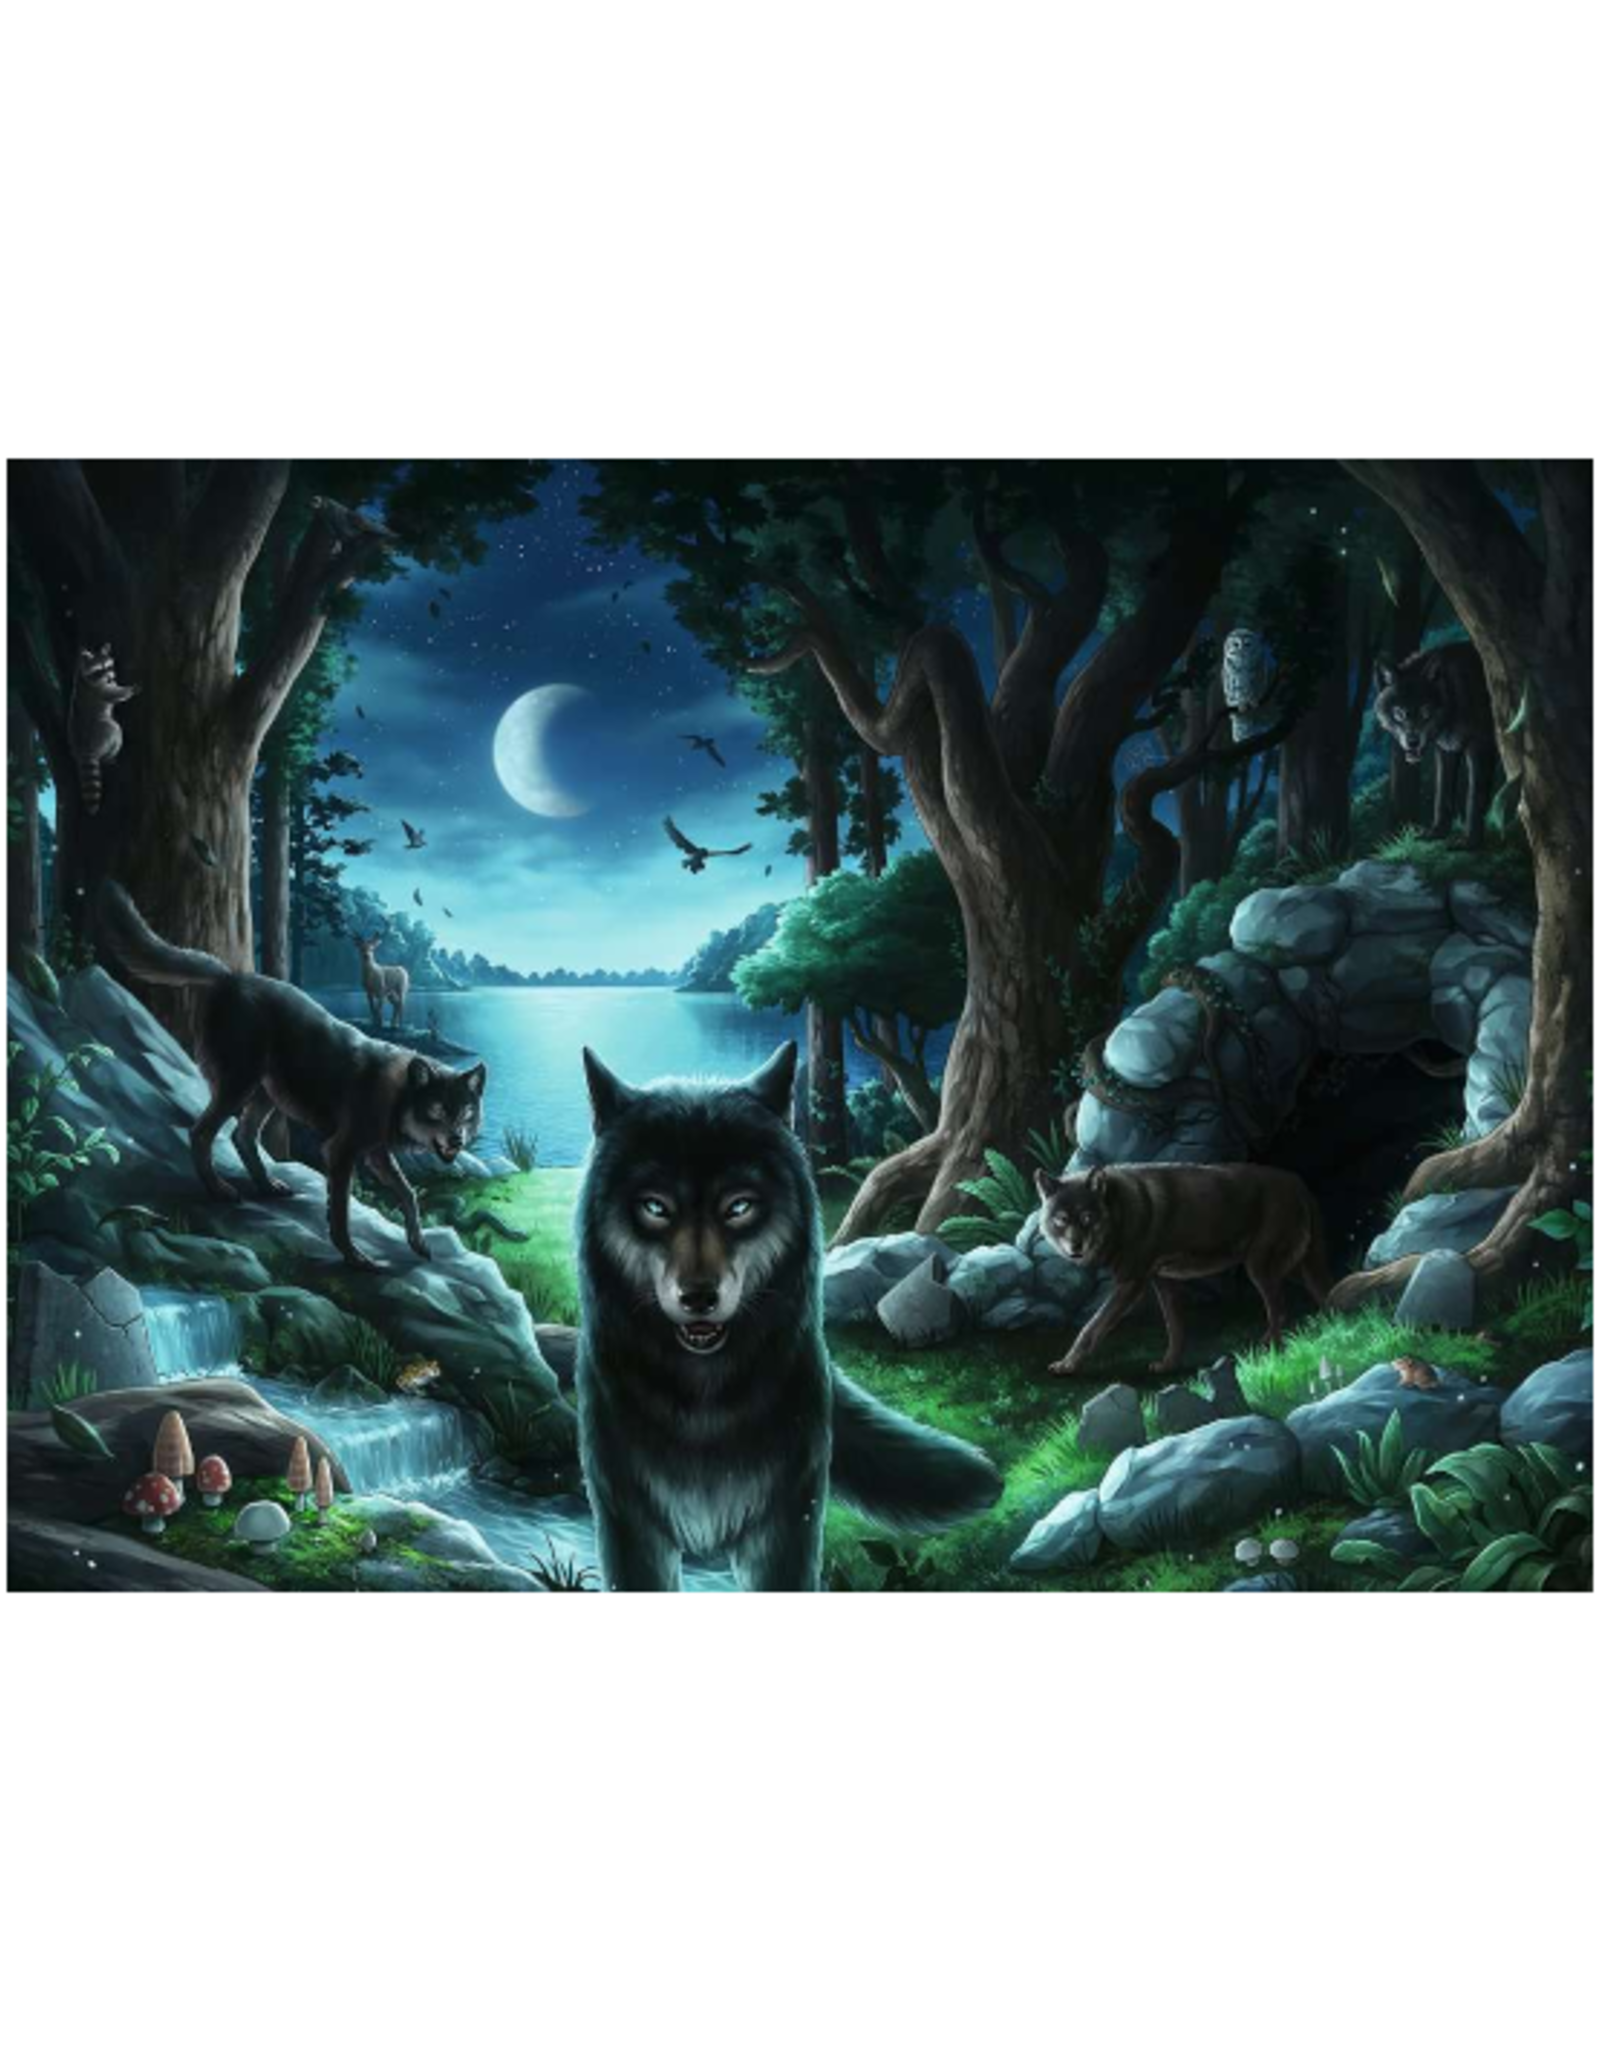 Ravensburger Ravensburger - 759 Pcs - Escape Puzzle - Curse of the Wolves